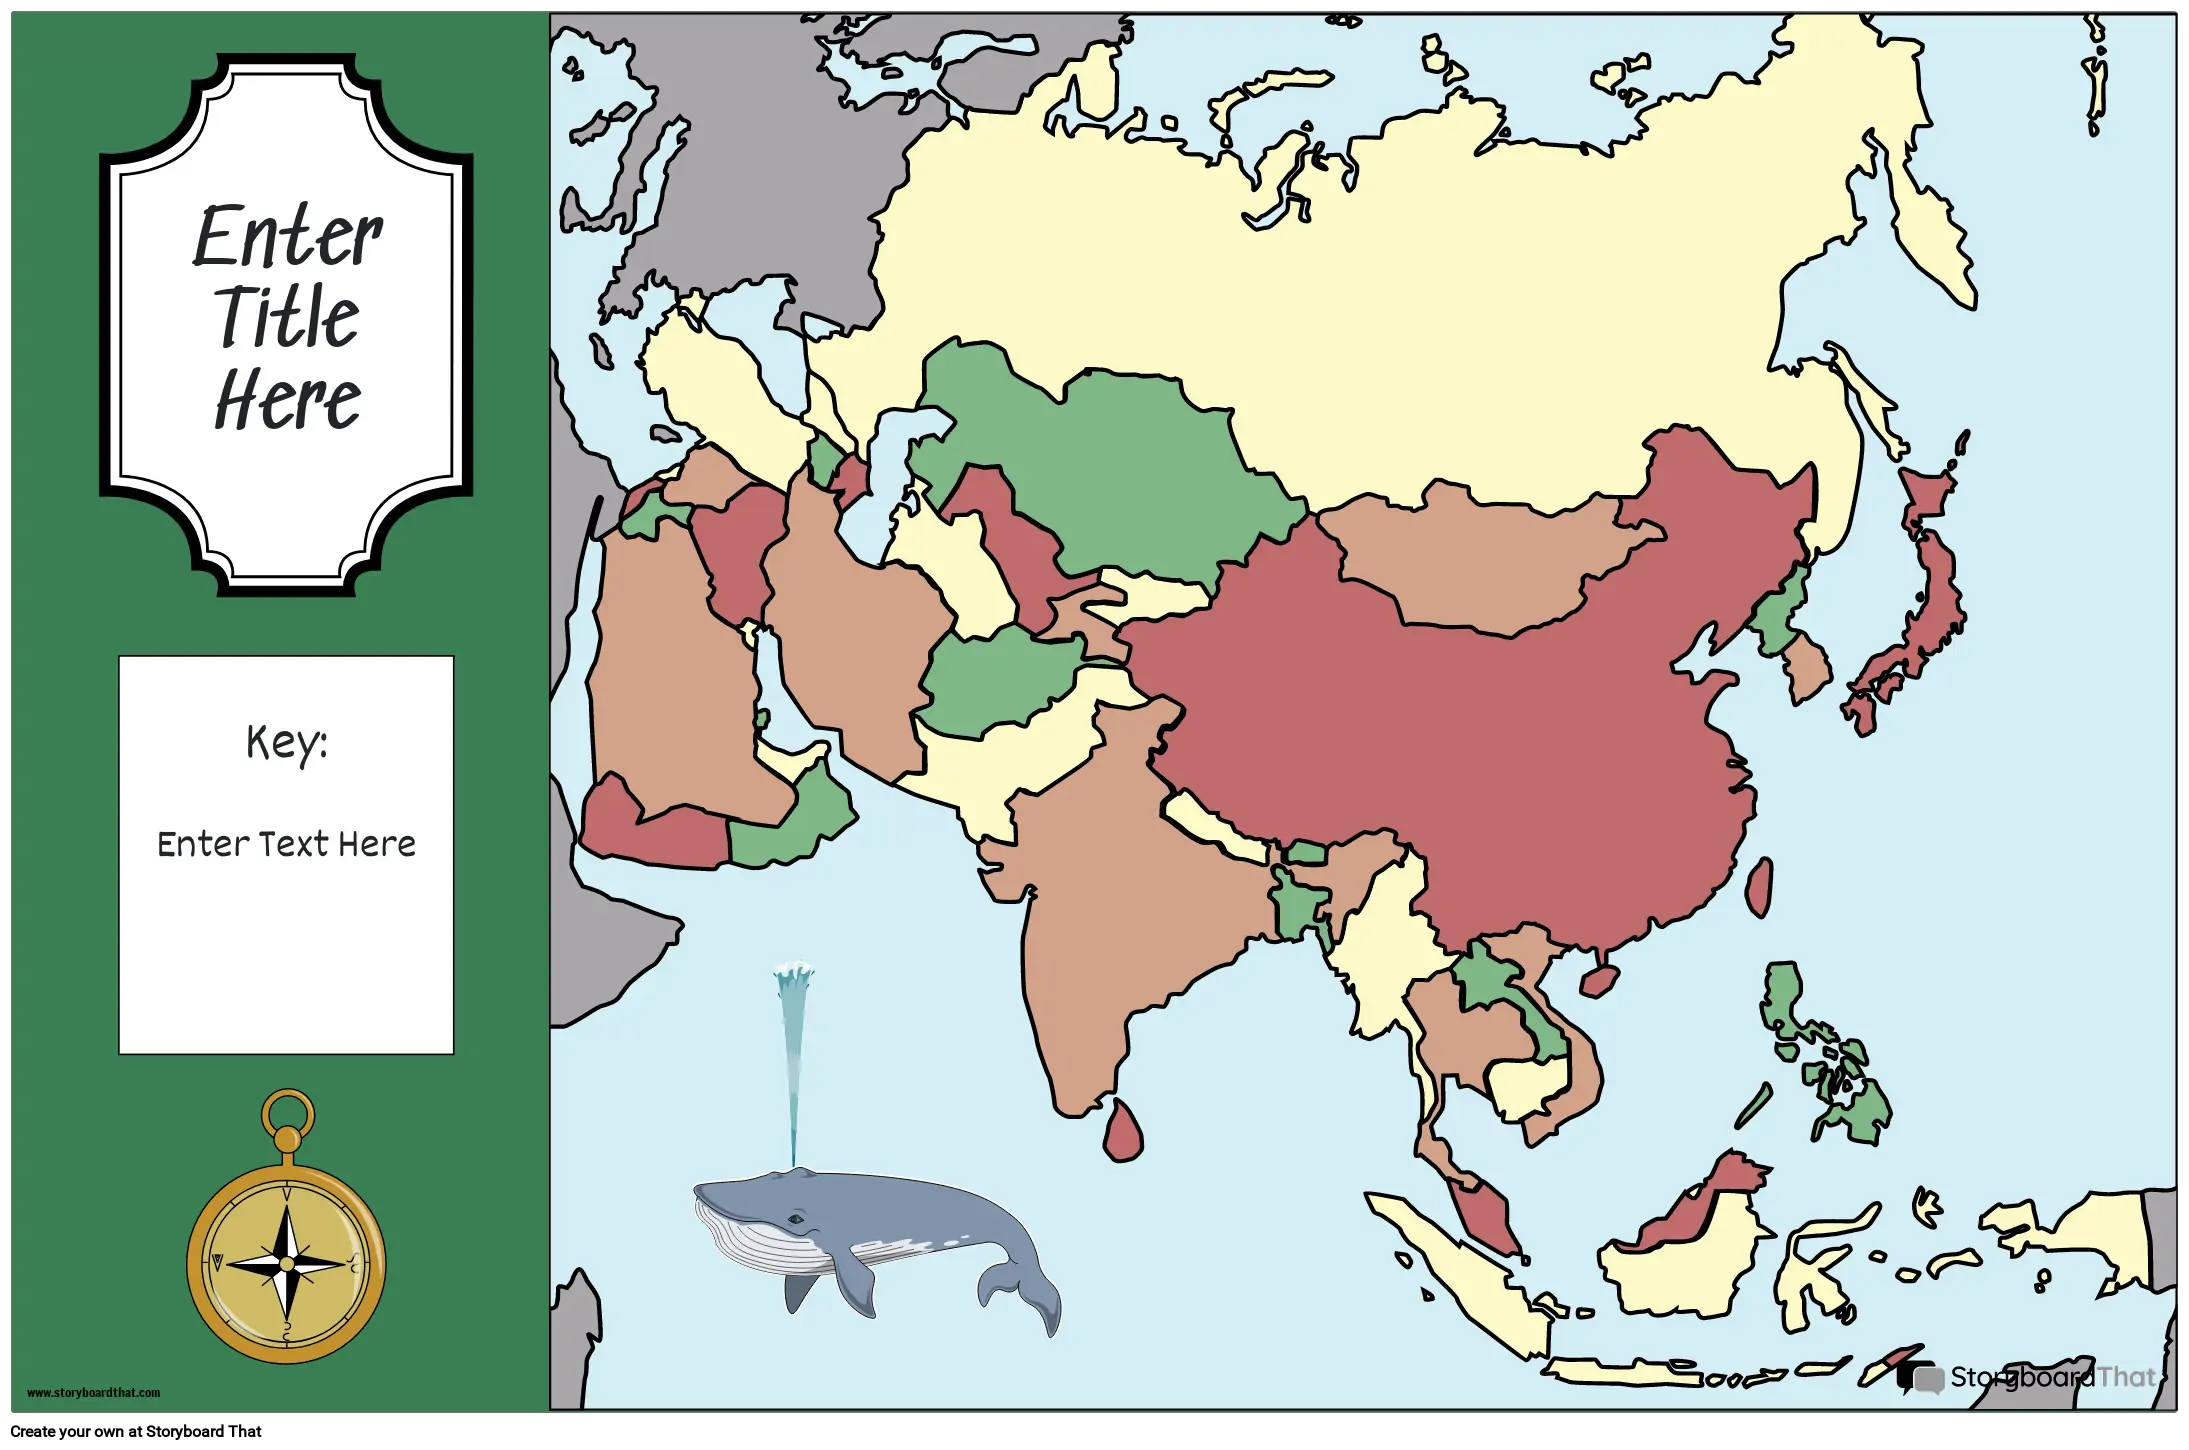 नक्शा पोस्टर 32 रंग लैंडस्केप एशिया